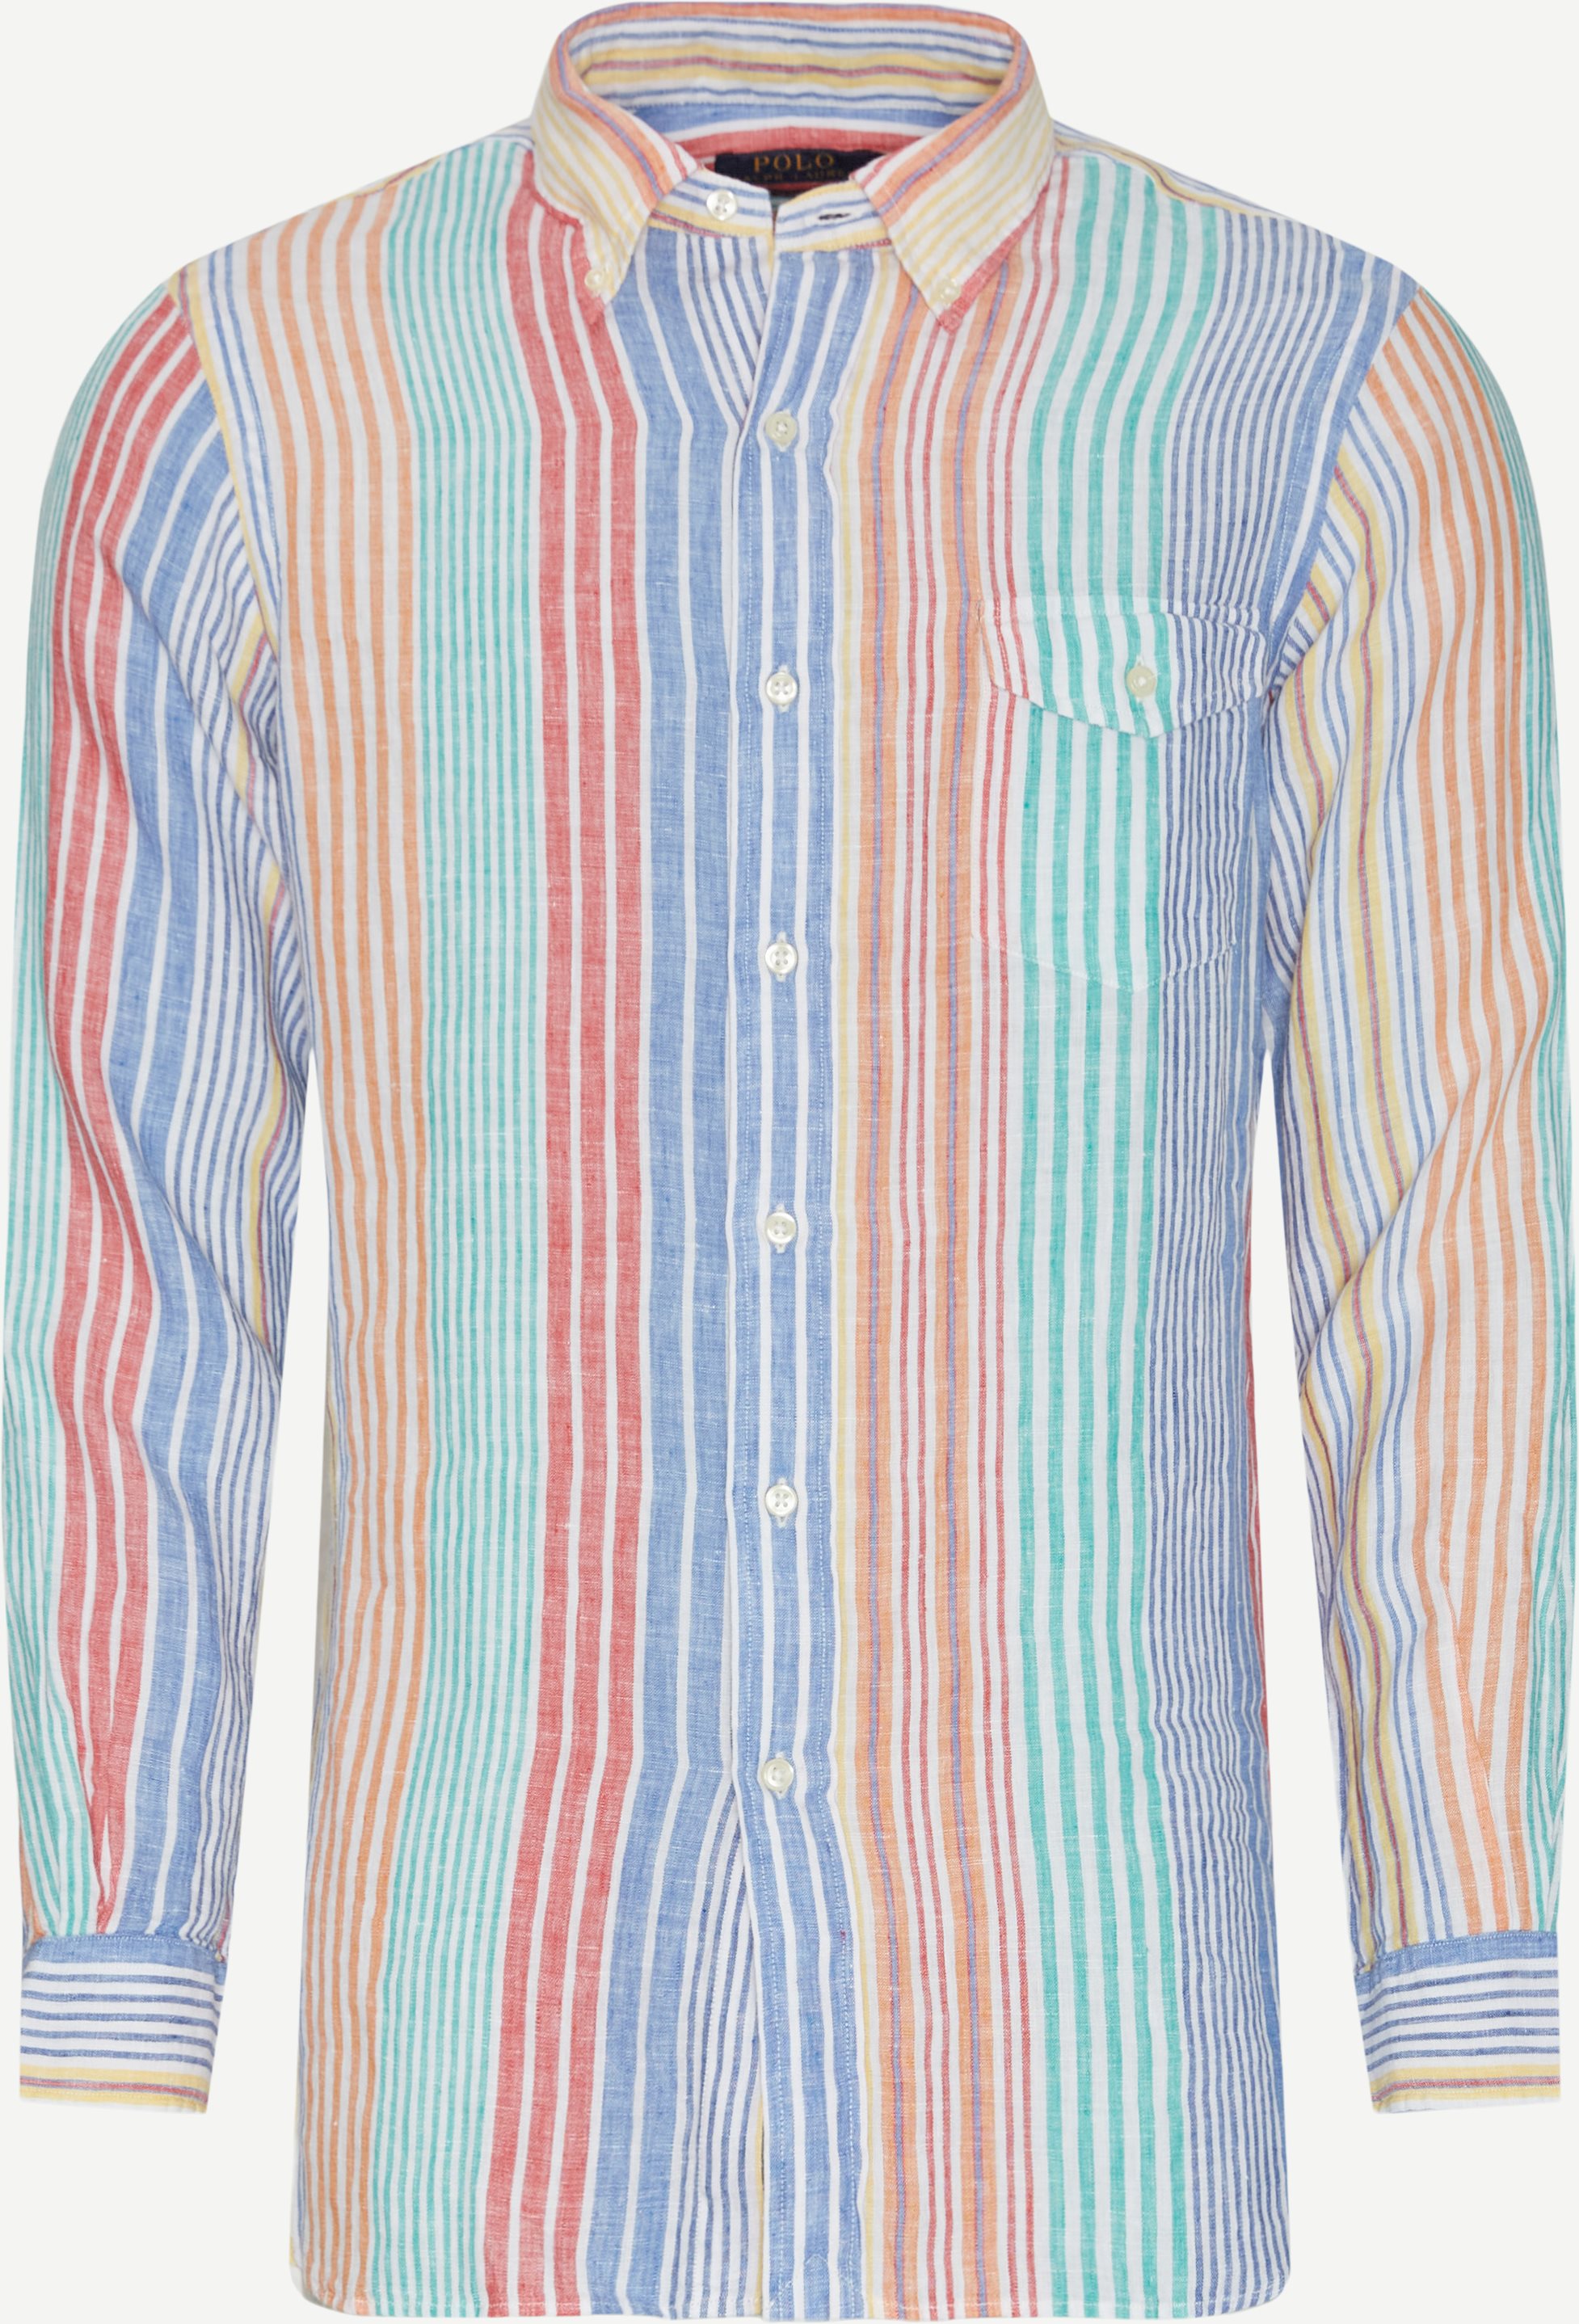 Polo Ralph Lauren Shirts 710867332 Blue